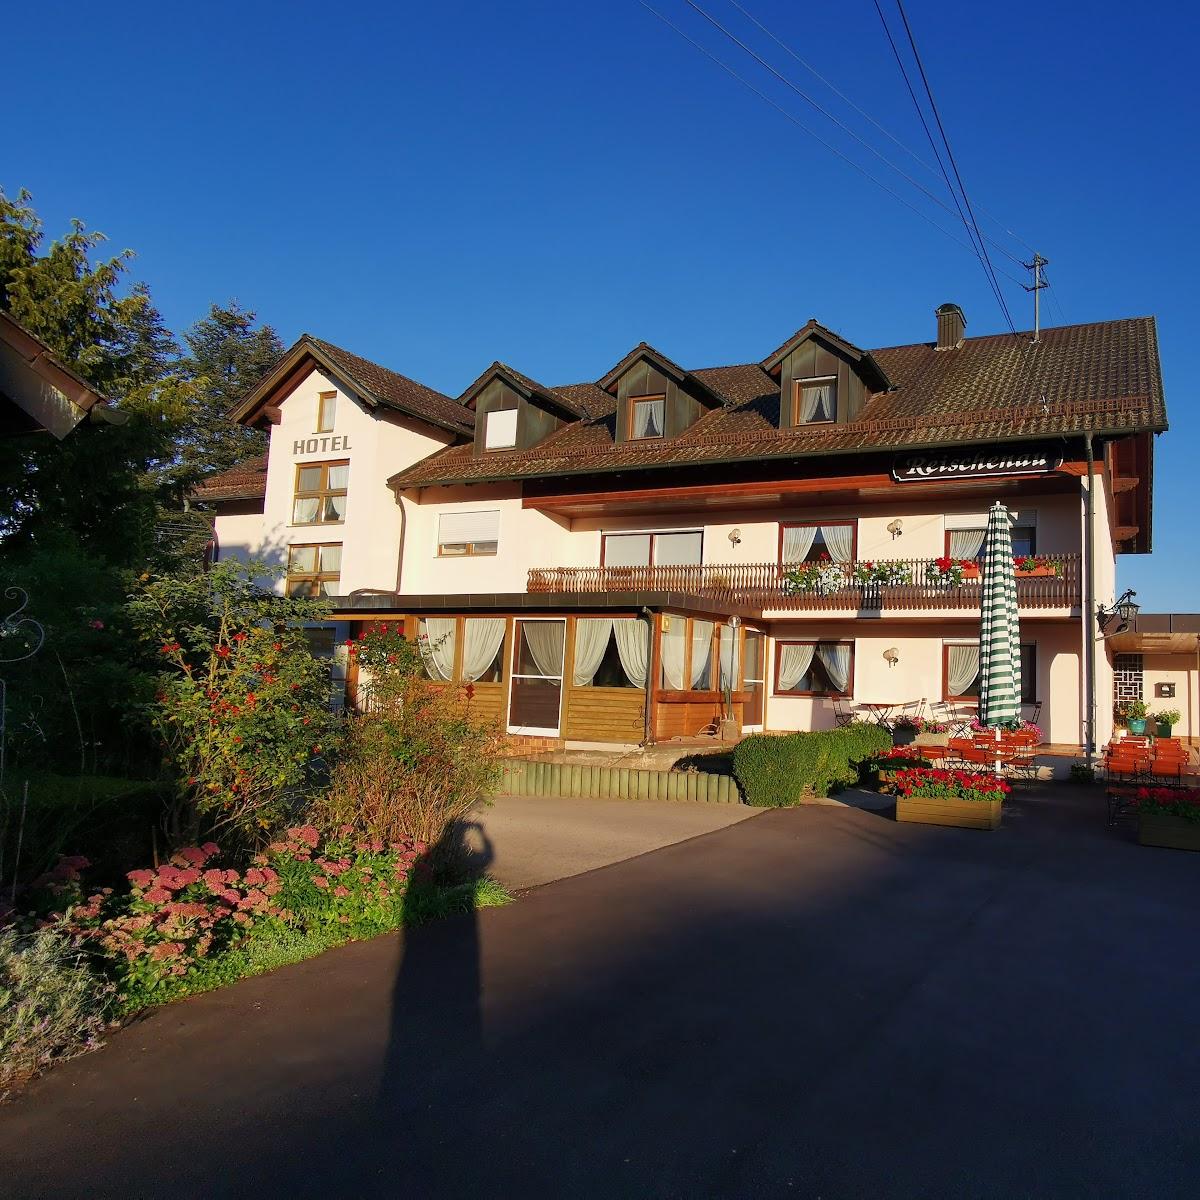 Restaurant "Hotel Reischenau" in Ustersbach